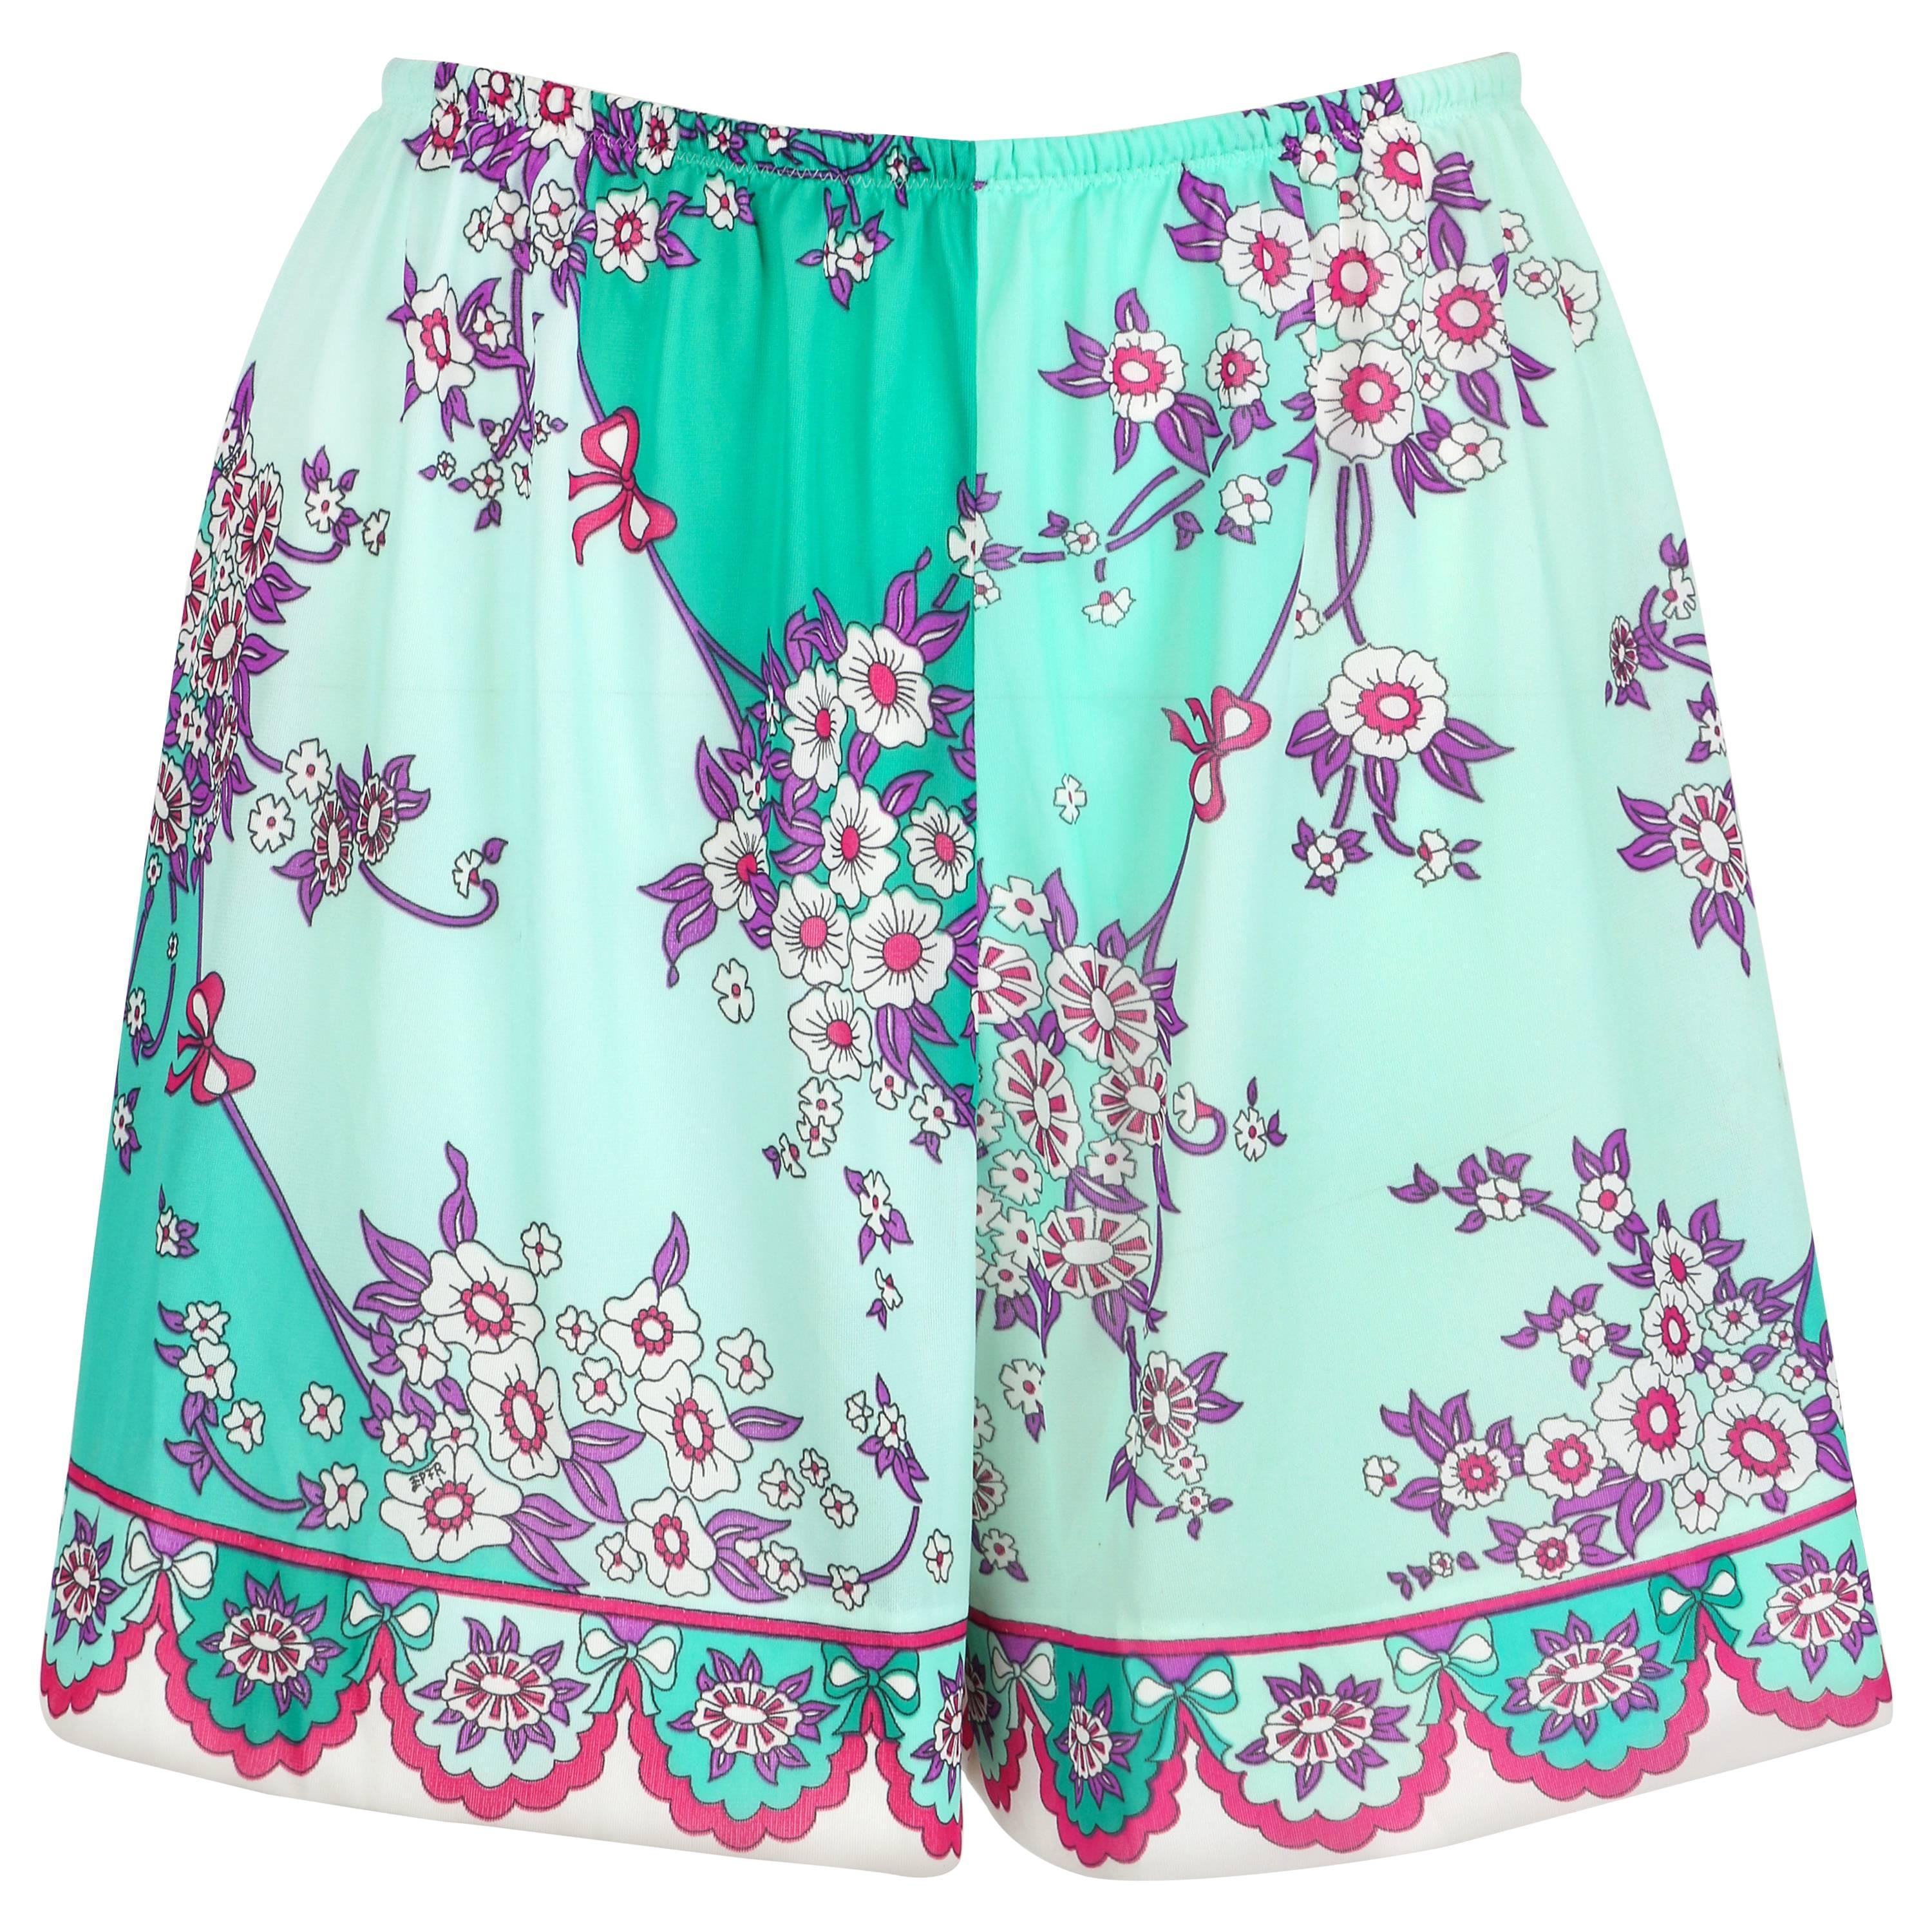 EMILIO PUCCI c.1960's Formfit Rodgers Mint Teal Floral Print Tap Pants Shorts